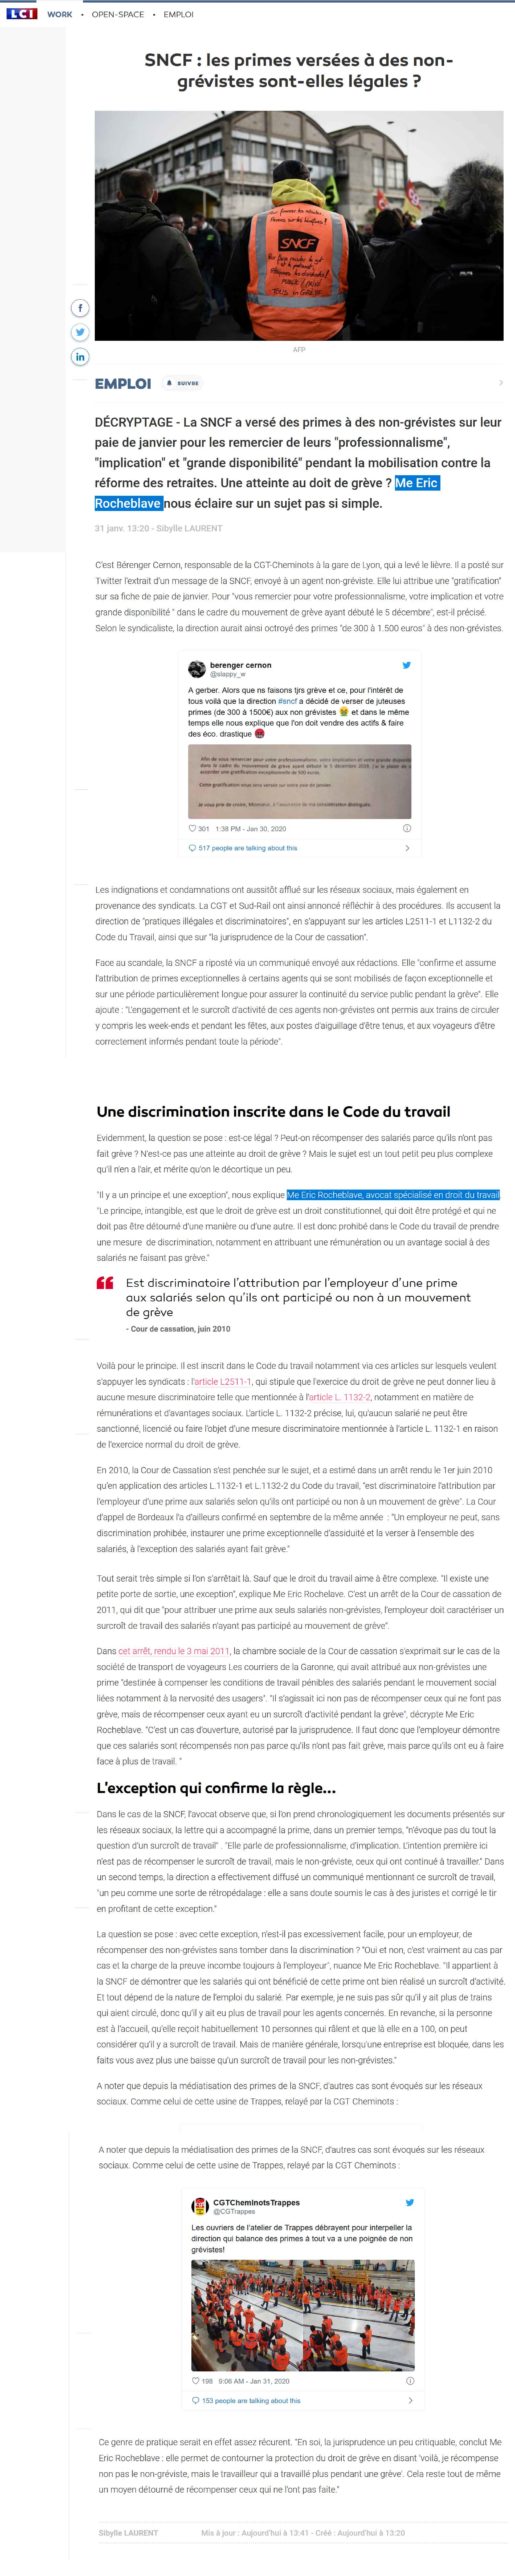 SNCF-primes-non-grévistes-légales